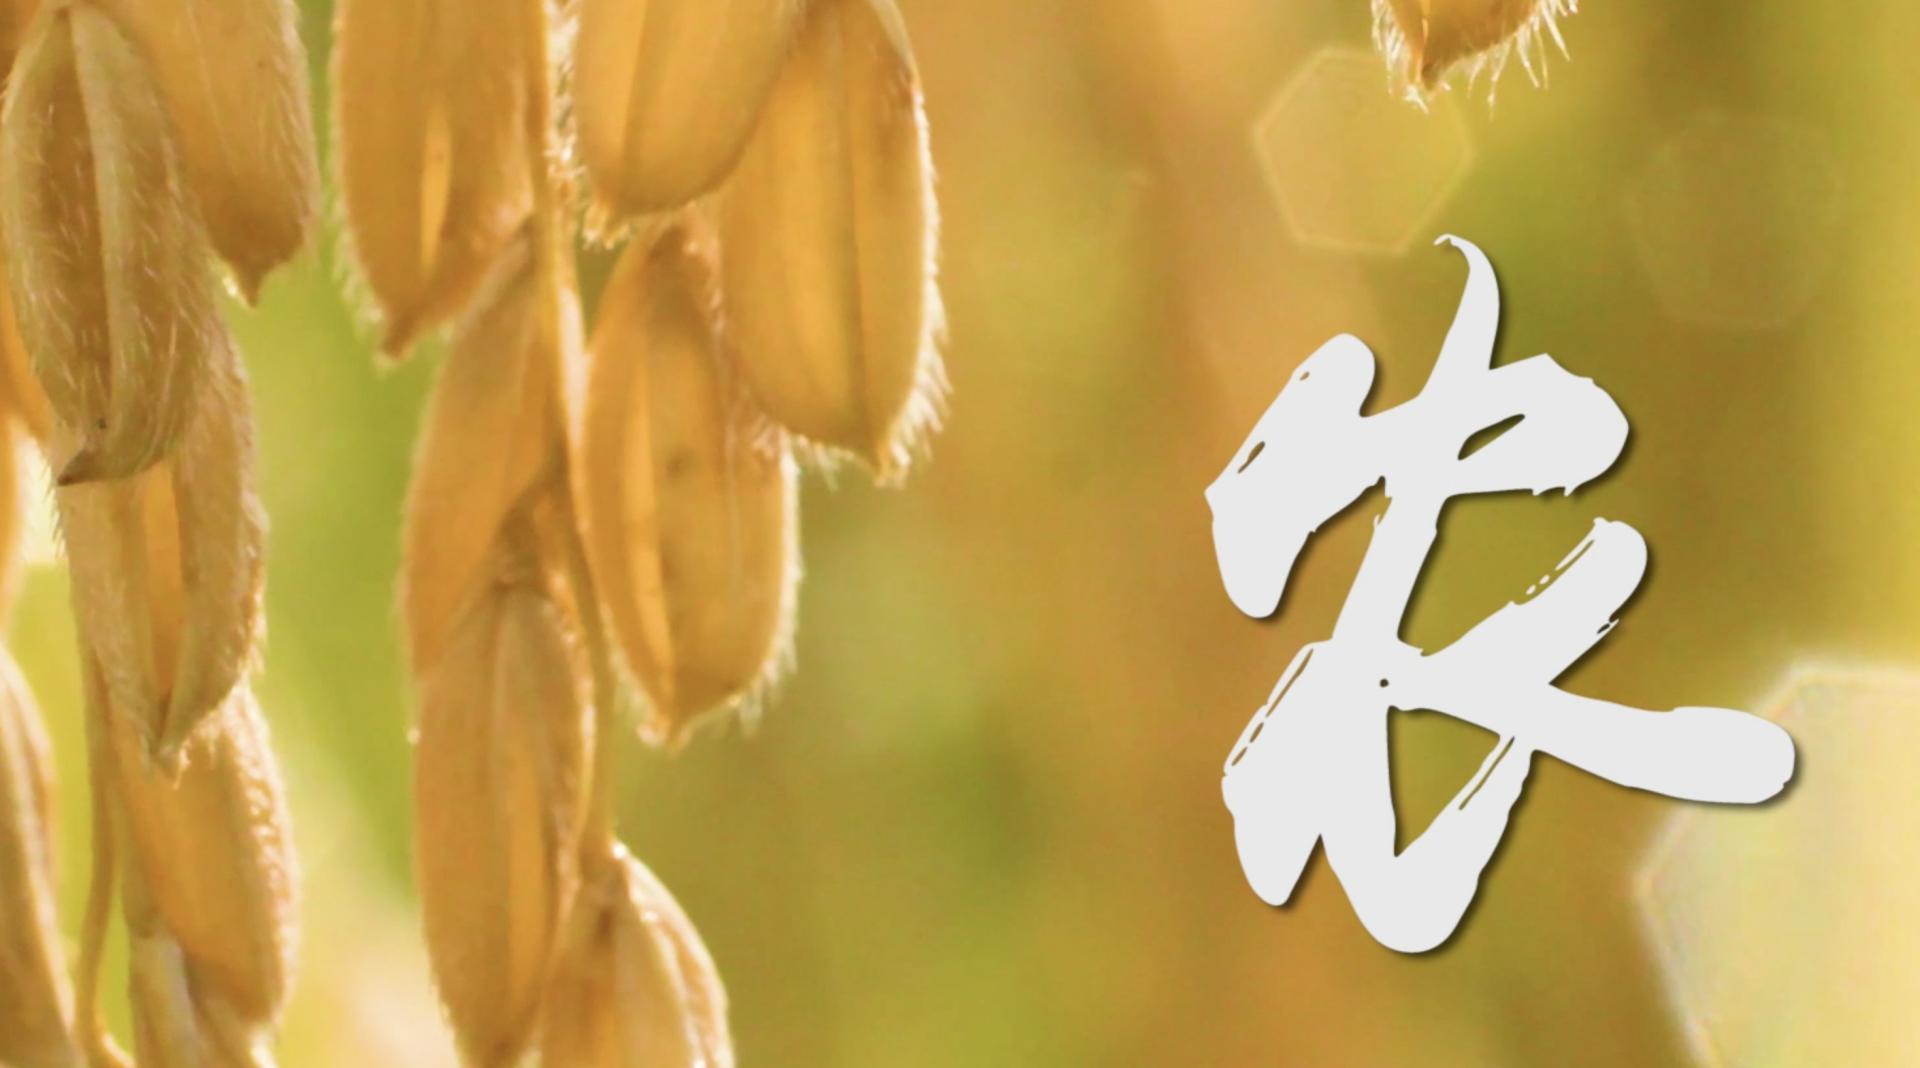 城市宣传片《龙门县“中国农民丰收节”暨龙门丝苗米文化节》